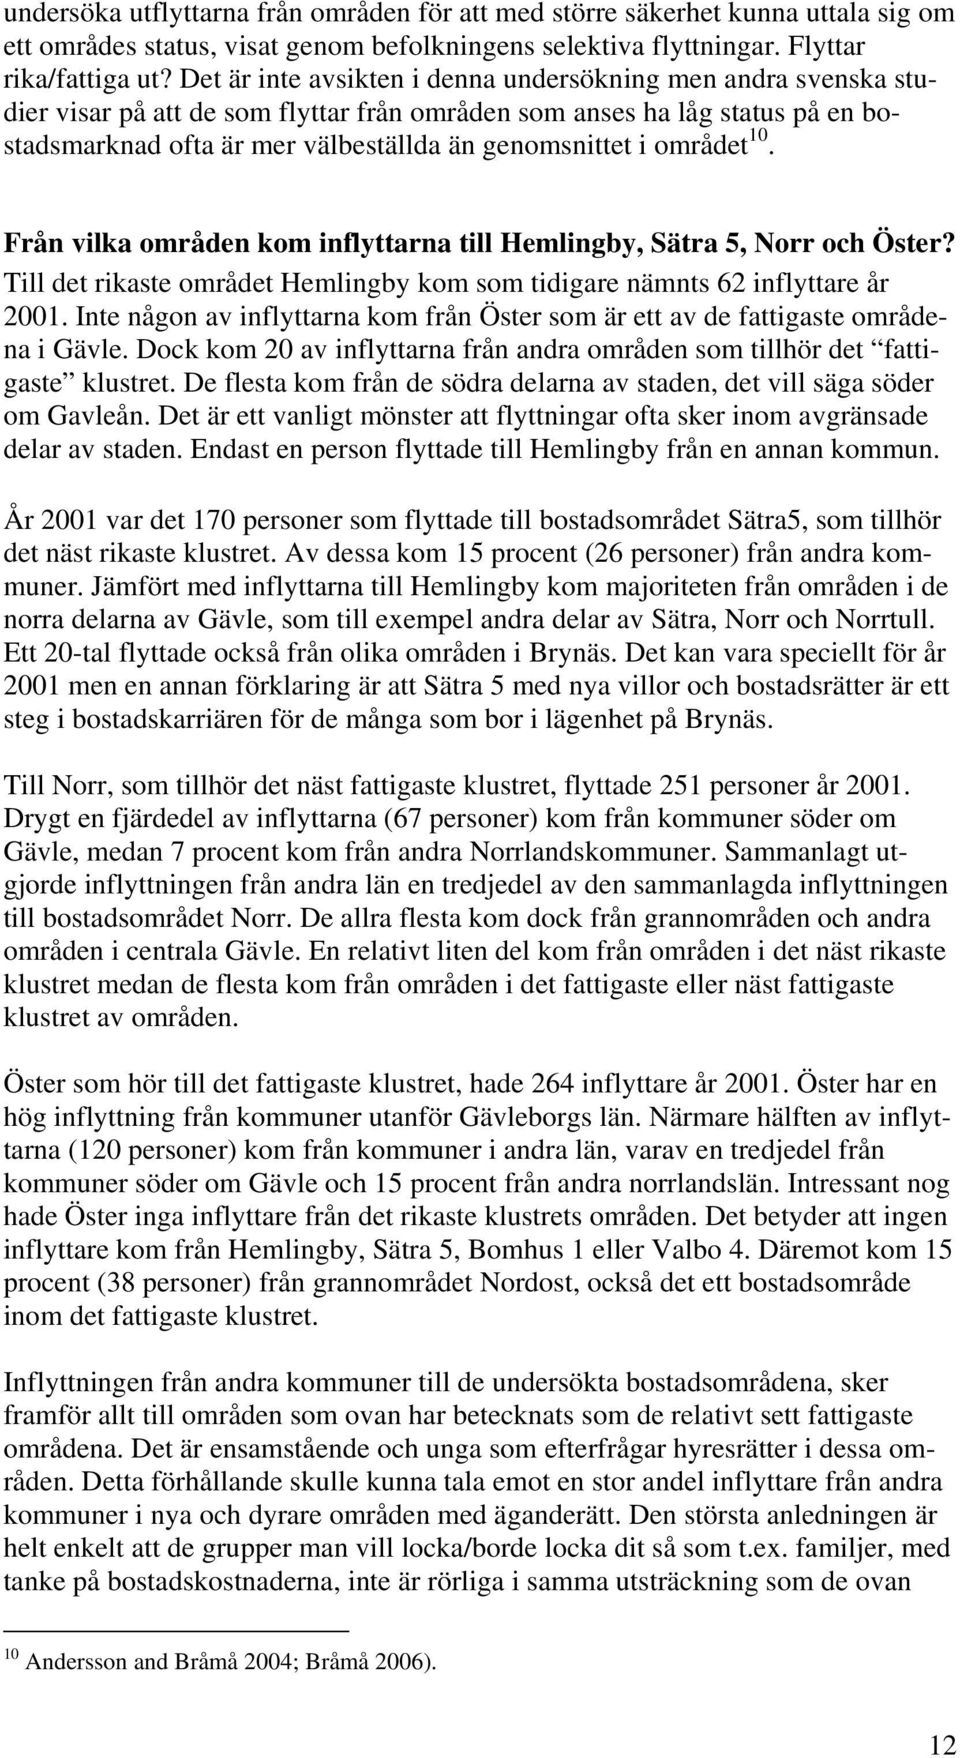 området 10. Från vilka områden kom inflyttarna till Hemlingby, Sätra 5, Norr och Öster? Till det rikaste området Hemlingby kom som tidigare nämnts 62 inflyttare år 2001.